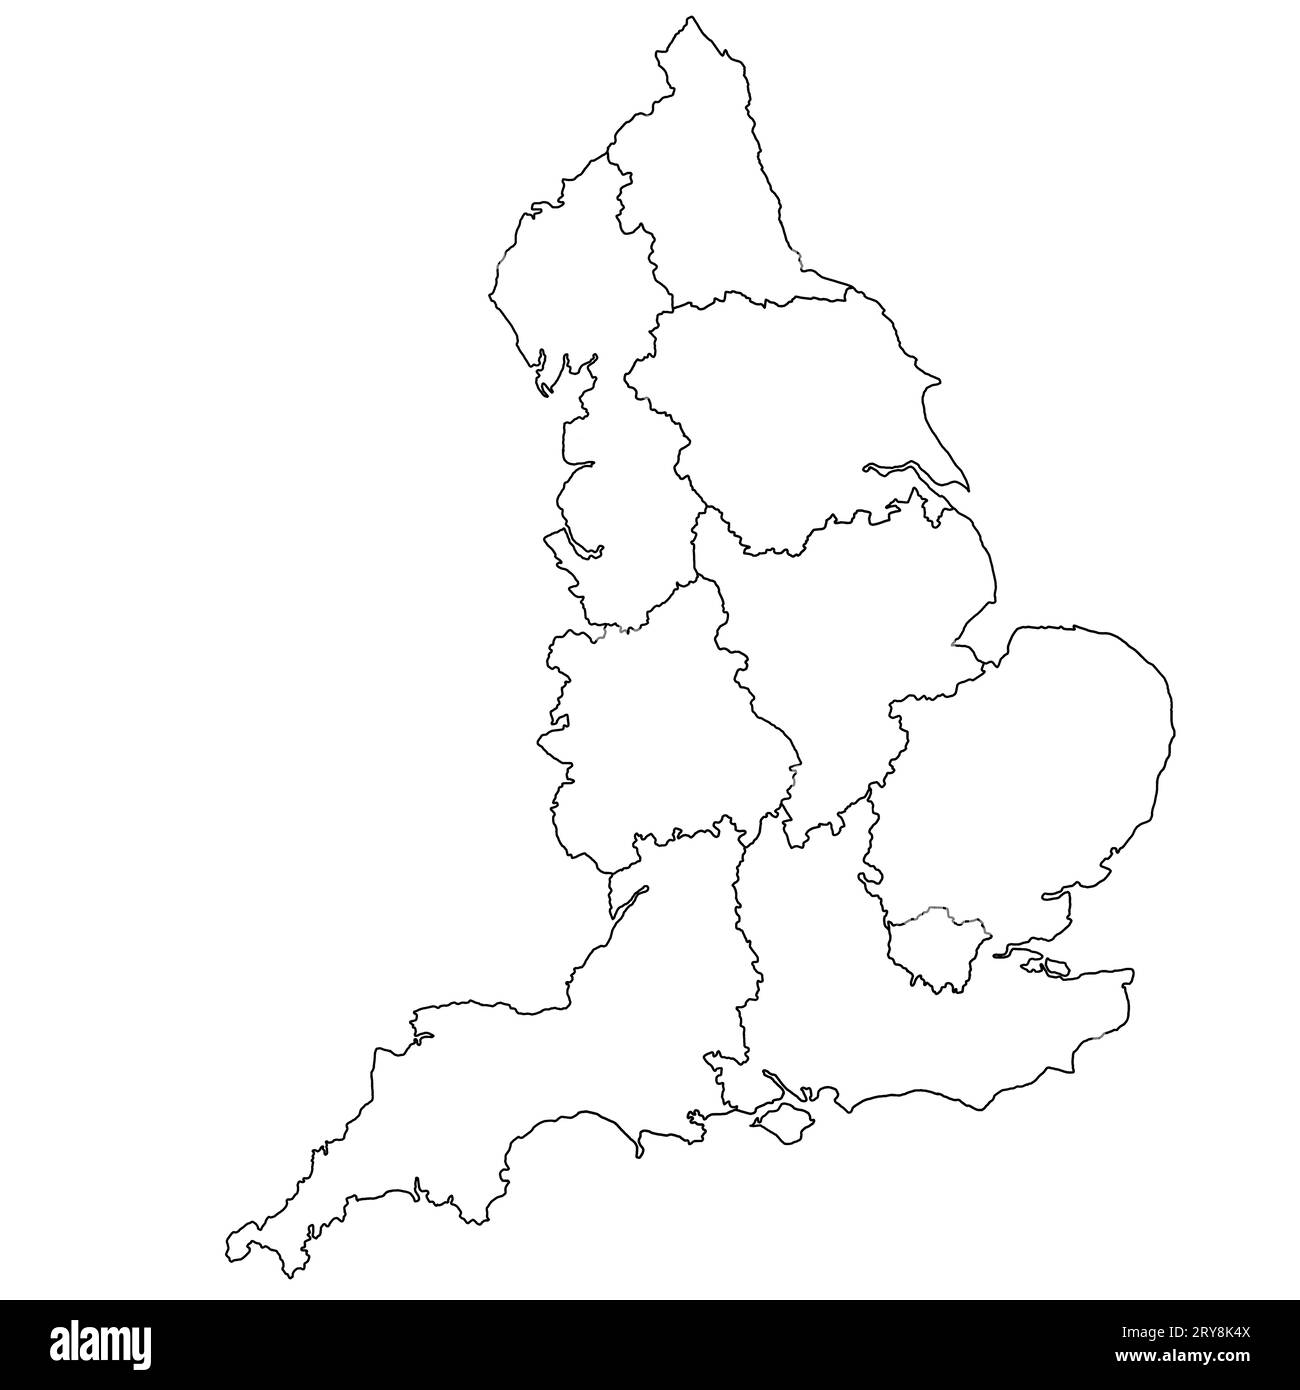 Mappa dell'Inghilterra con le regioni, mappa amministrativa dell'Inghilterra. Regno Unito, Gran Bretagna, Regno Unito, Foto Stock